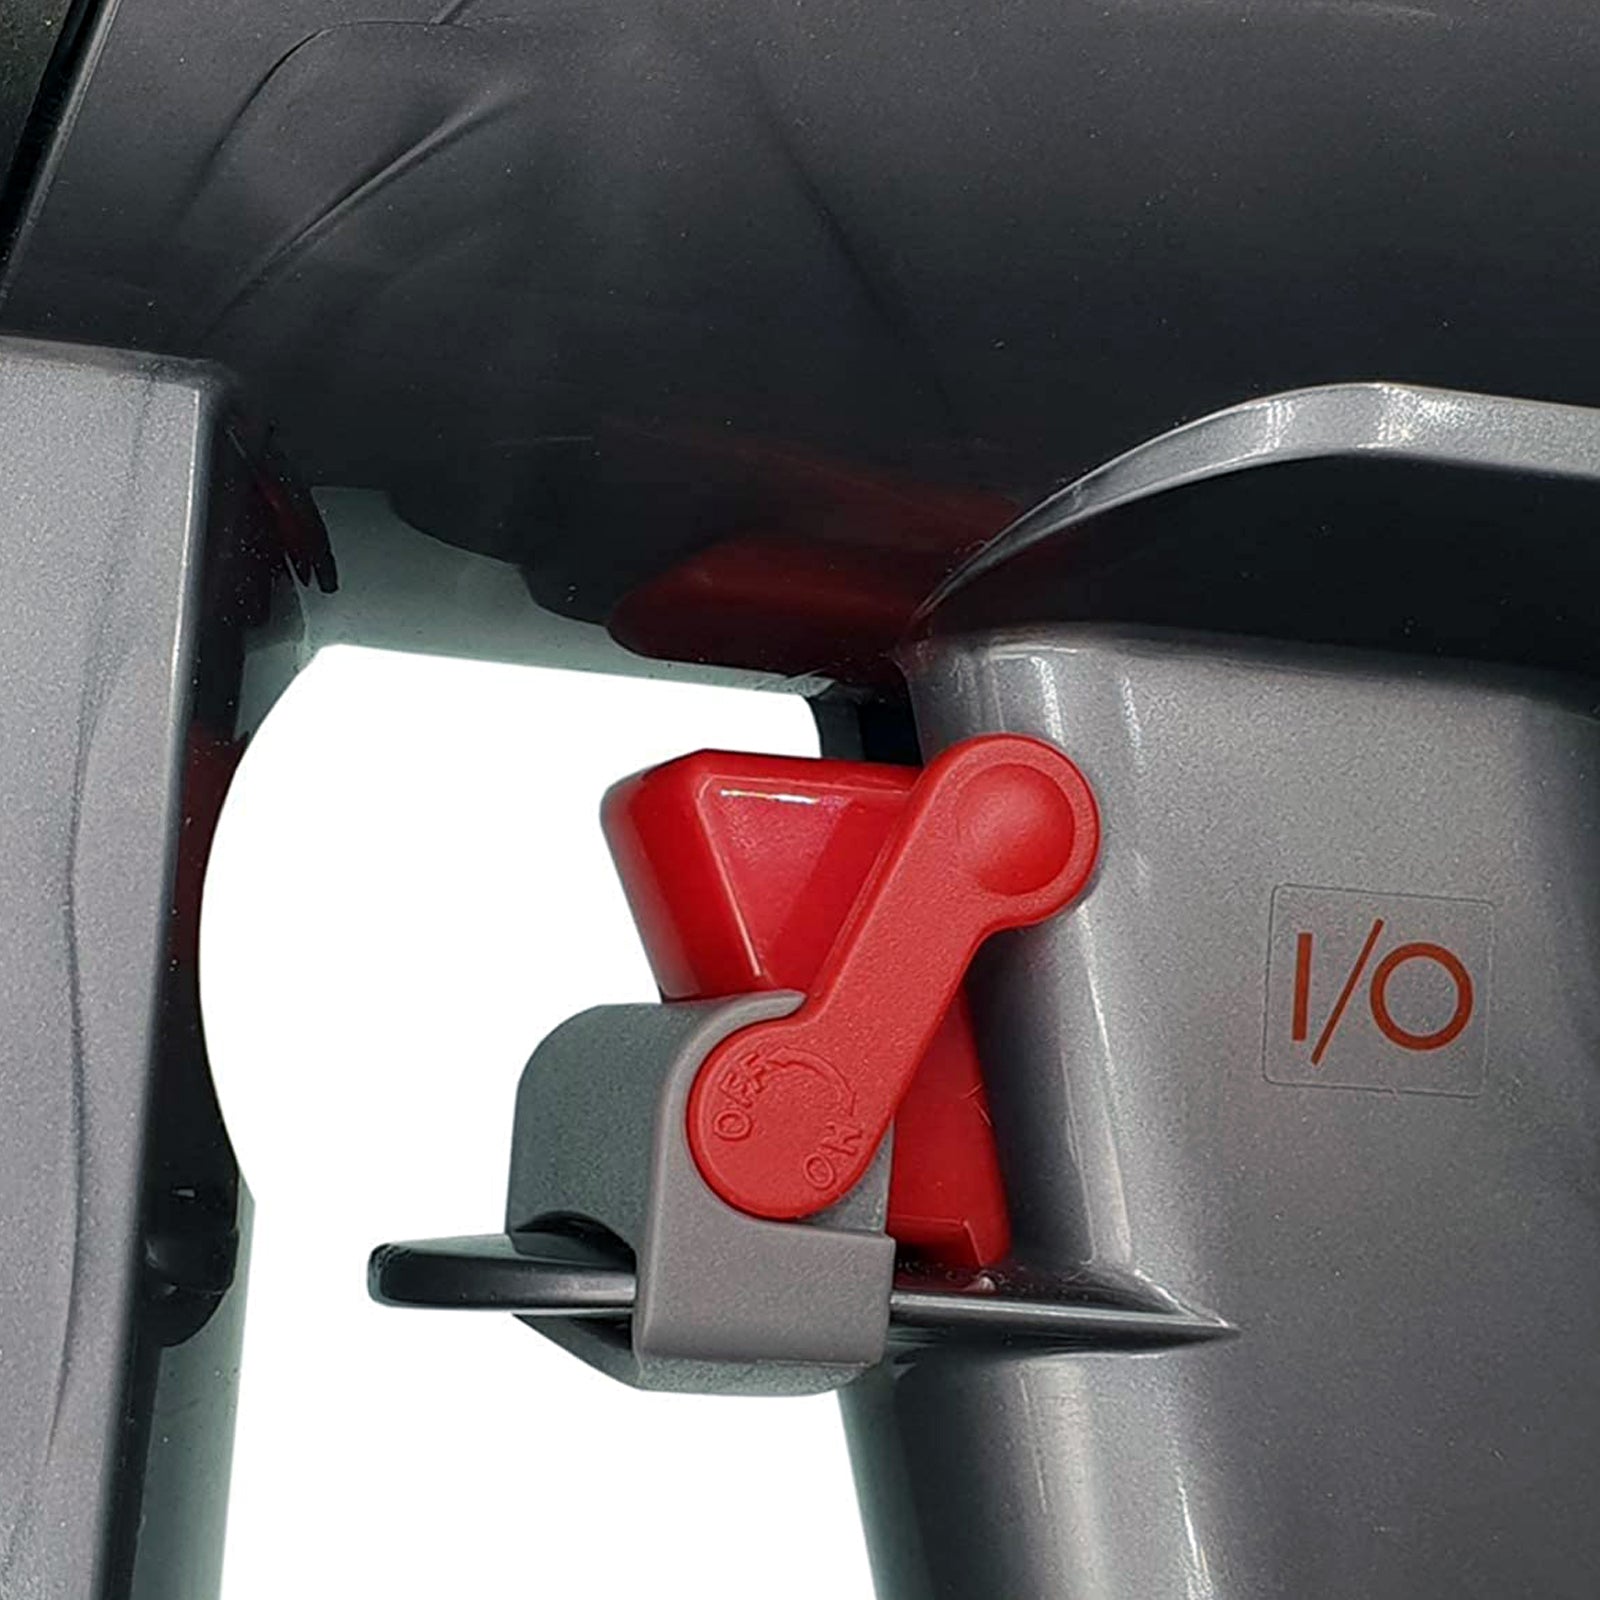 Washable Pre-Motor Stick Filter + Trigger Lock for Dyson V6 V7 V8 Vacuum Cleaner